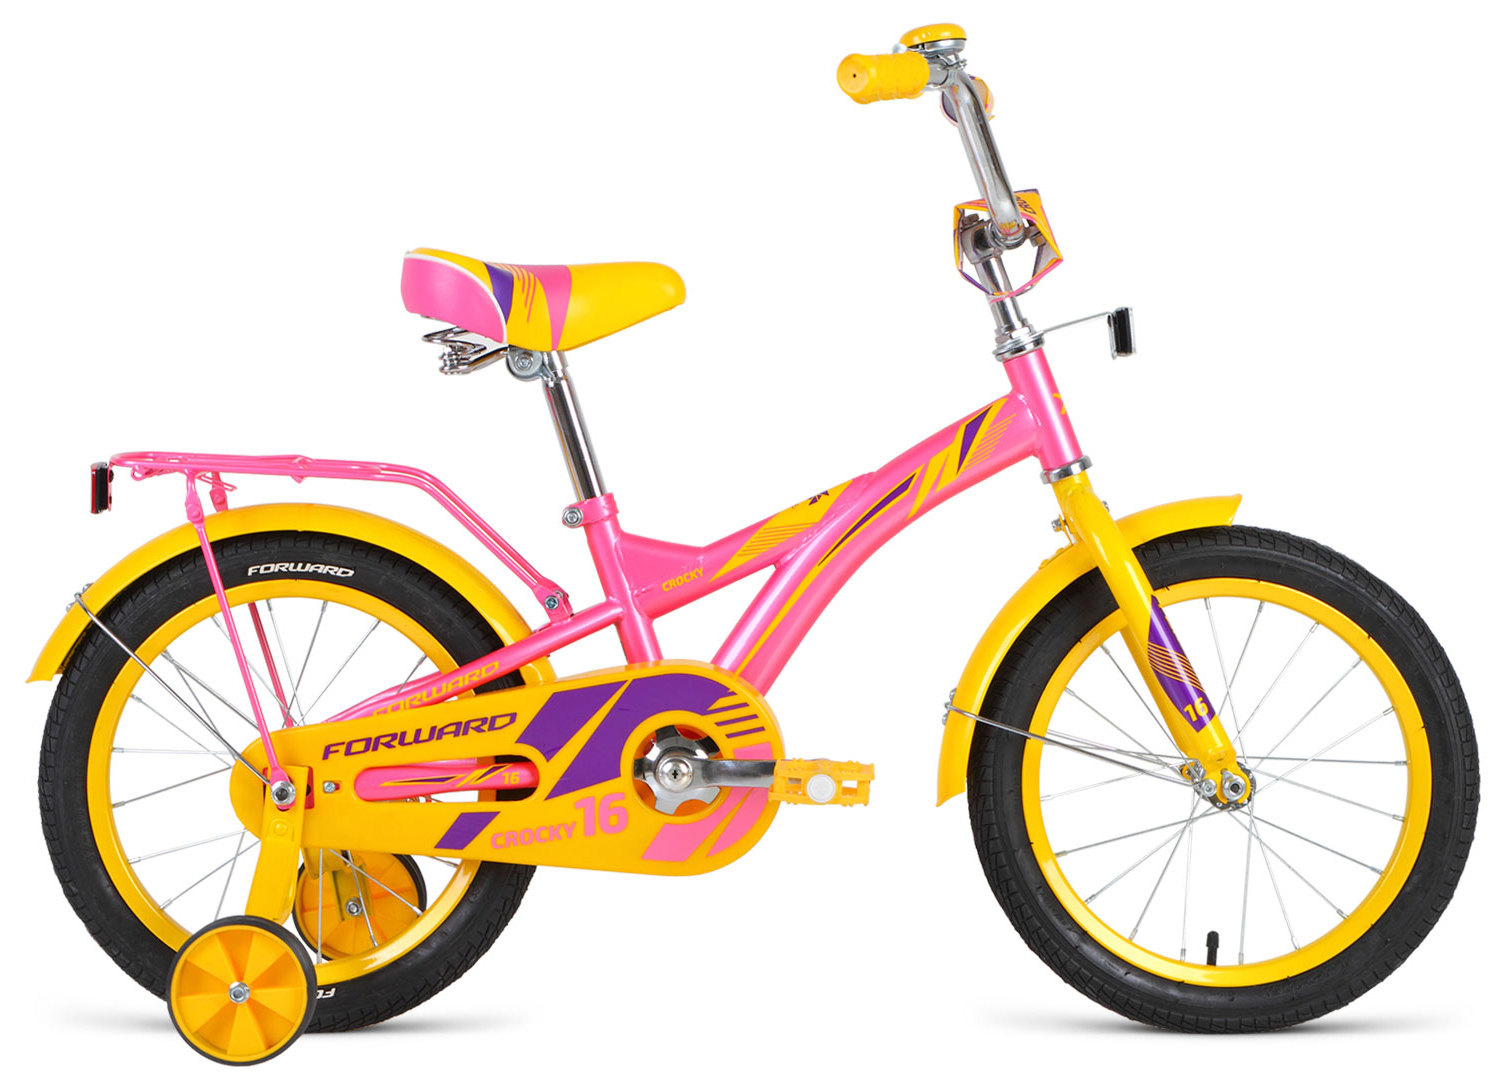  Отзывы о Трехколесный детский велосипед Forward Crocky 16 2019